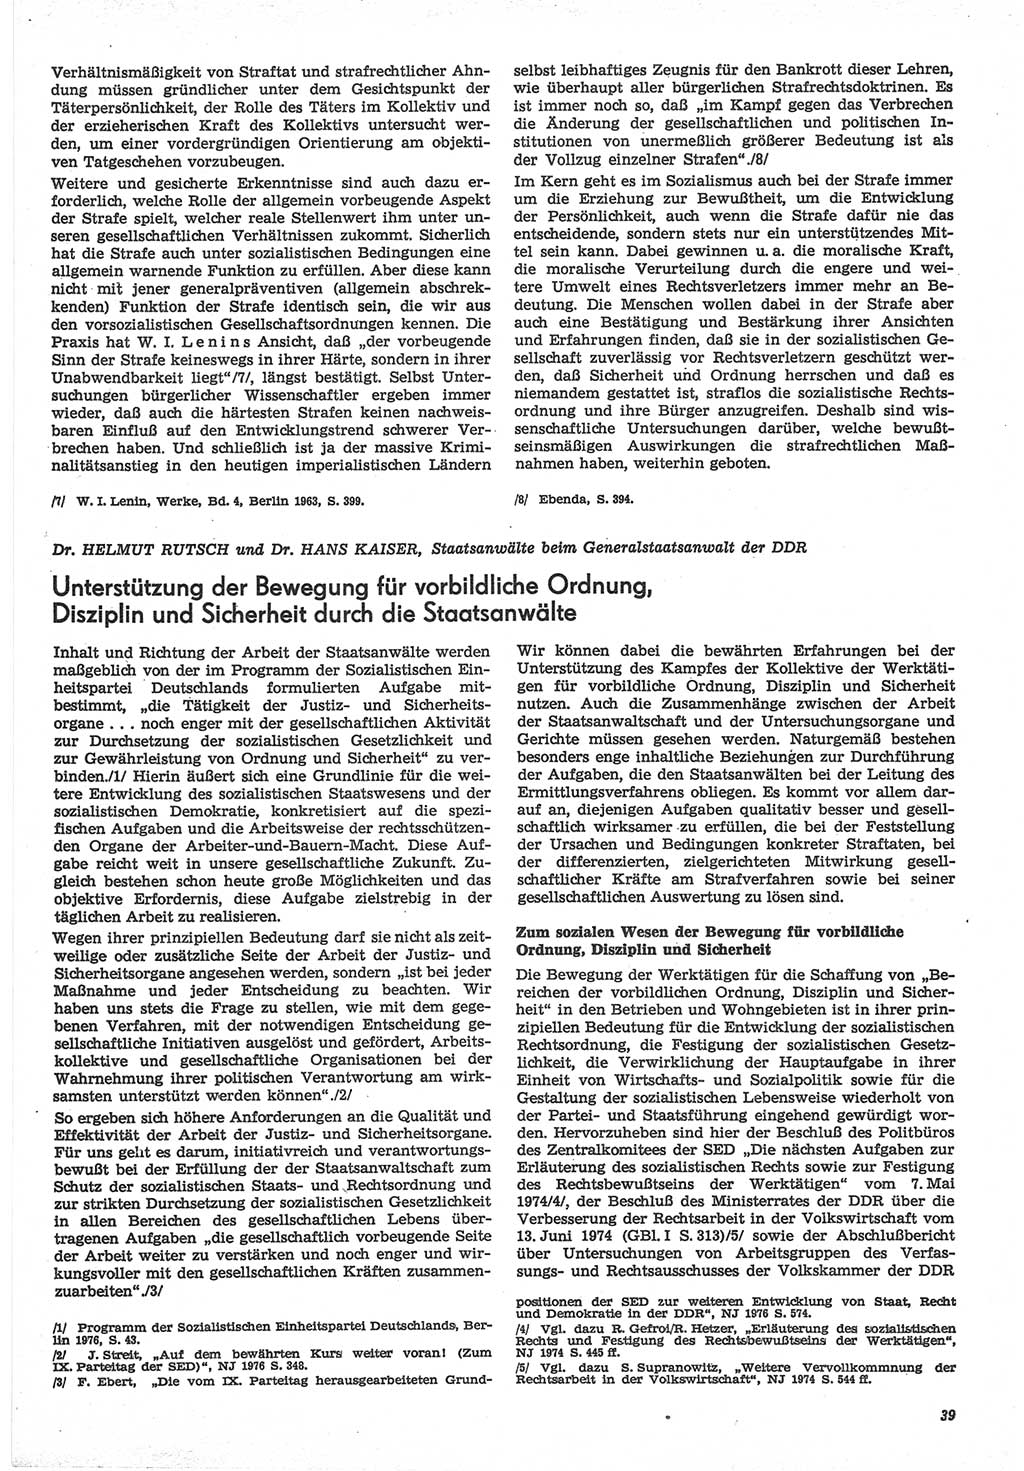 Neue Justiz (NJ), Zeitschrift für Recht und Rechtswissenschaft-Zeitschrift, sozialistisches Recht und Gesetzlichkeit, 31. Jahrgang 1977, Seite 39 (NJ DDR 1977, S. 39)